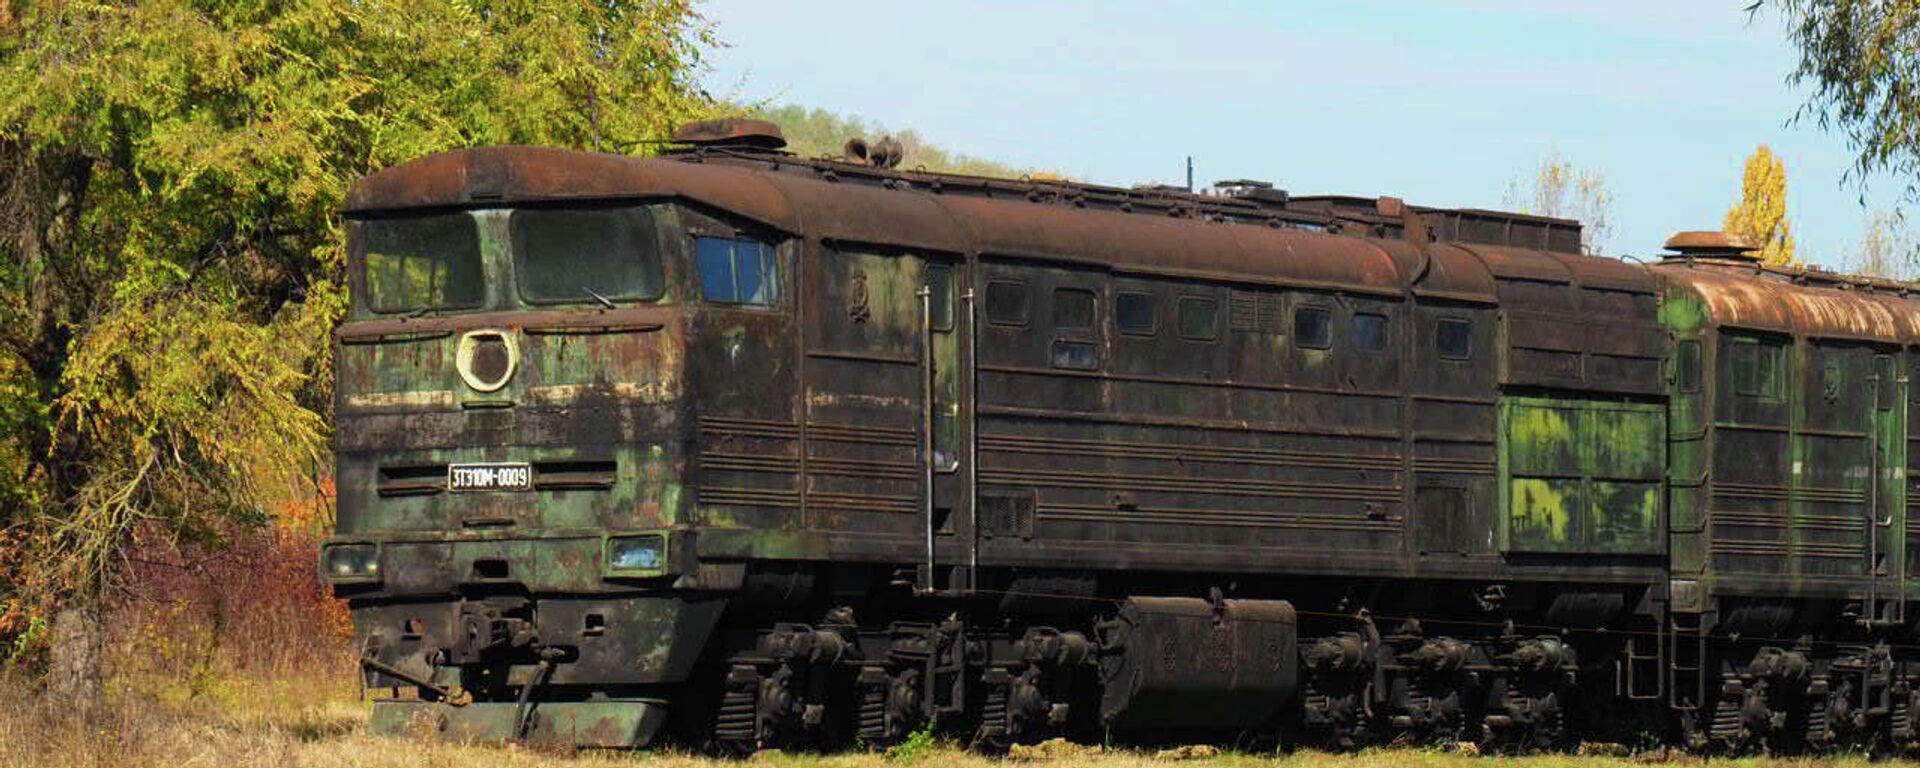 С молотка или под нож: какая судьба ждет 98 локомотивов ЖДМ - Sputnik Молдова, 1920, 31.10.2021